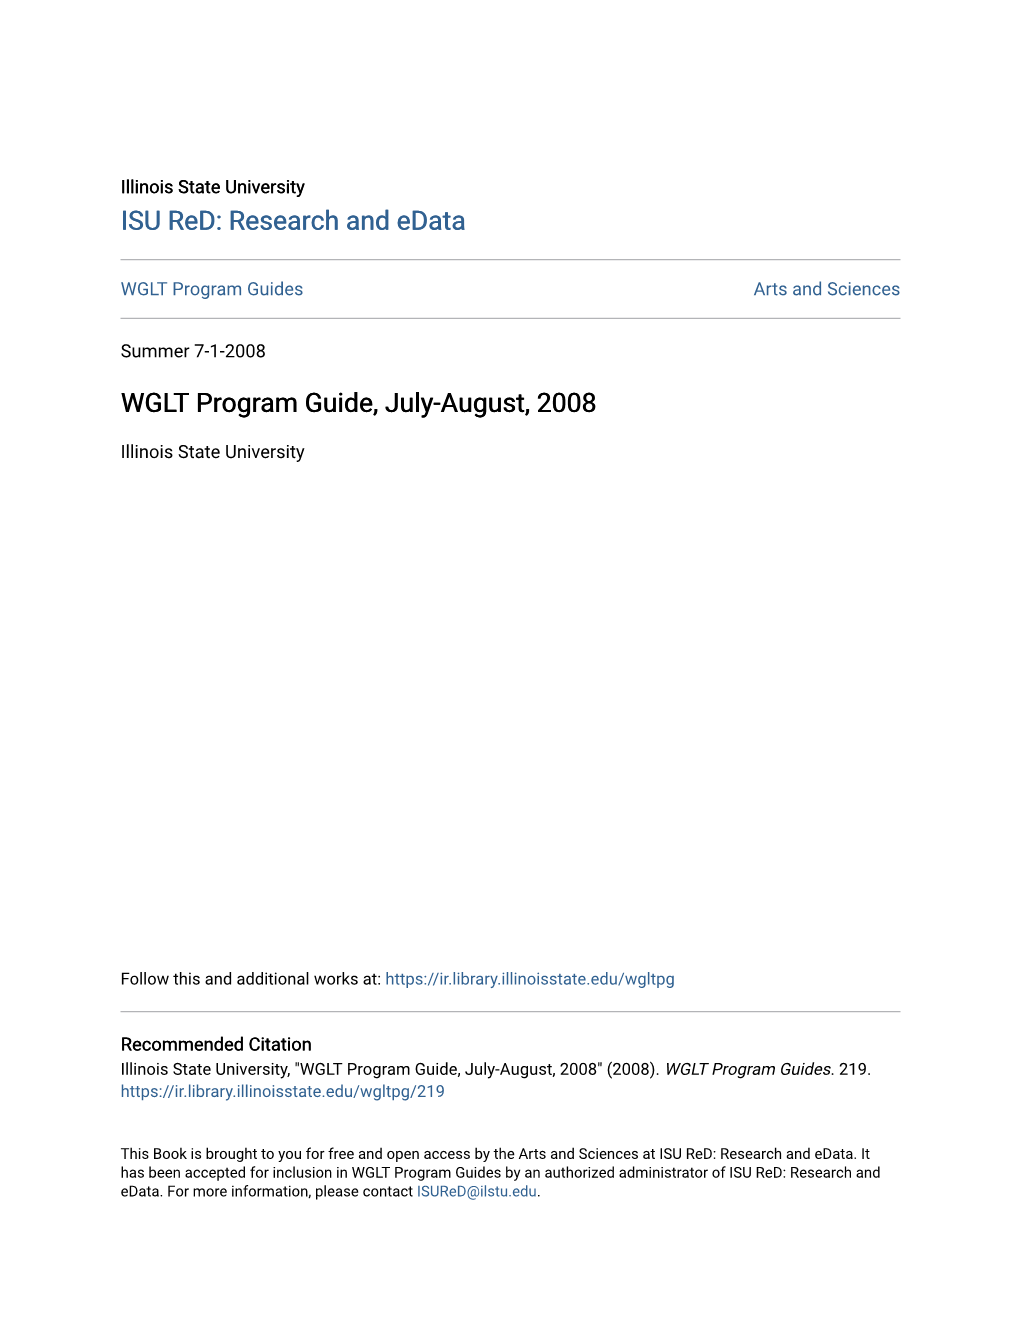 WGLT Program Guide, July-August, 2008